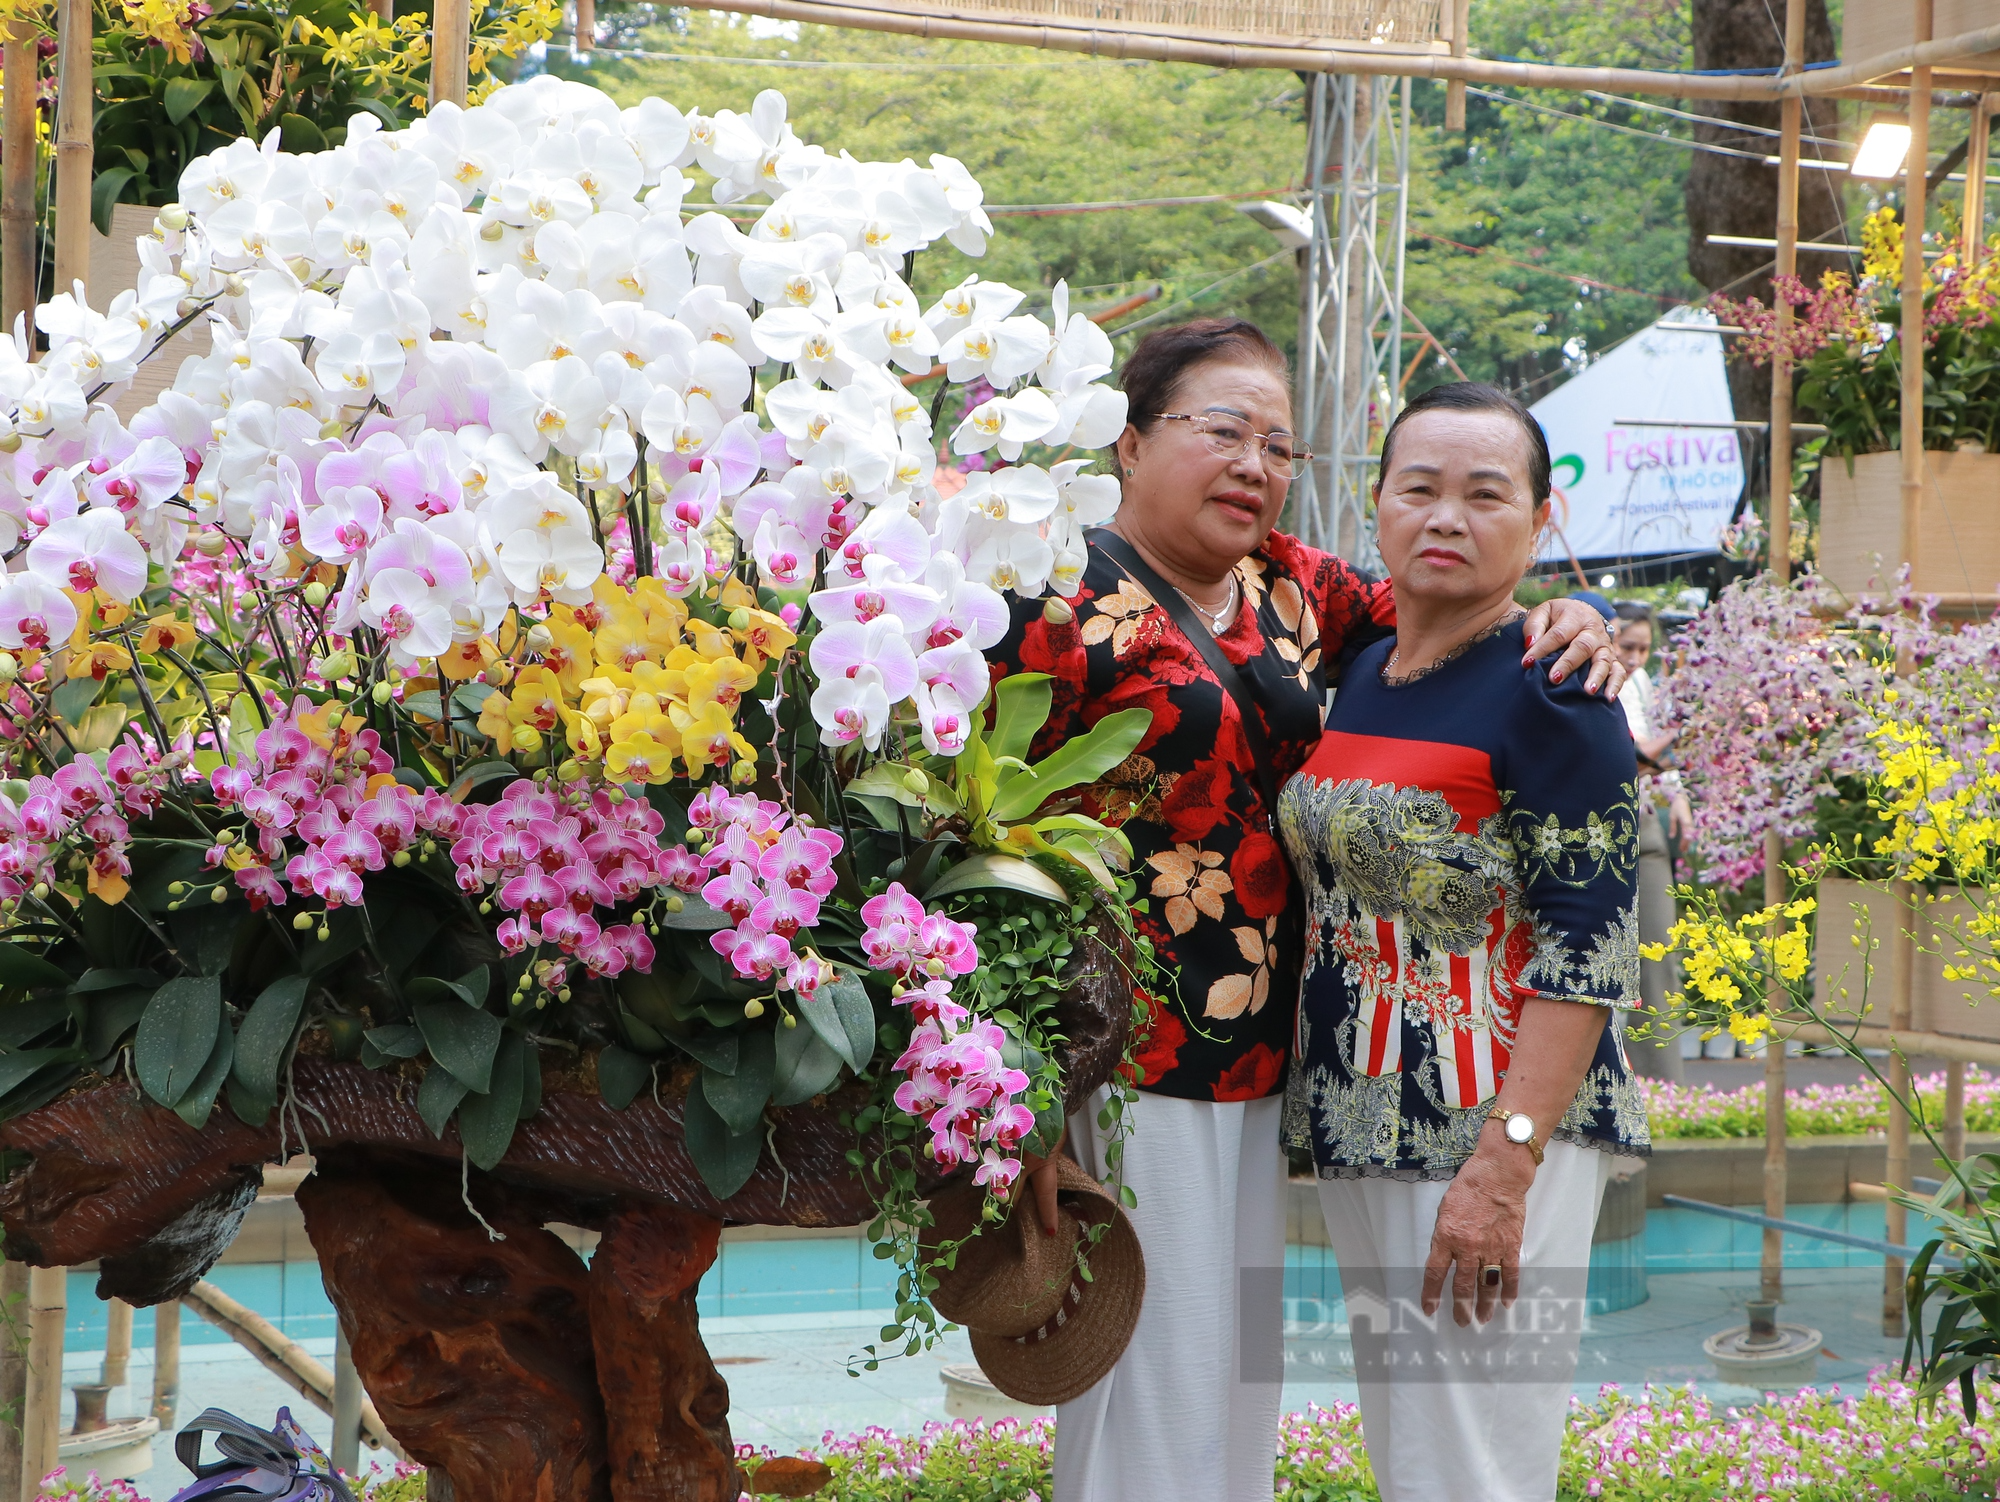 Festival hoa lan TP.HCM quy tụ 29.000 sản phẩm hoa lan tham gia trưng bày - Ảnh 4.